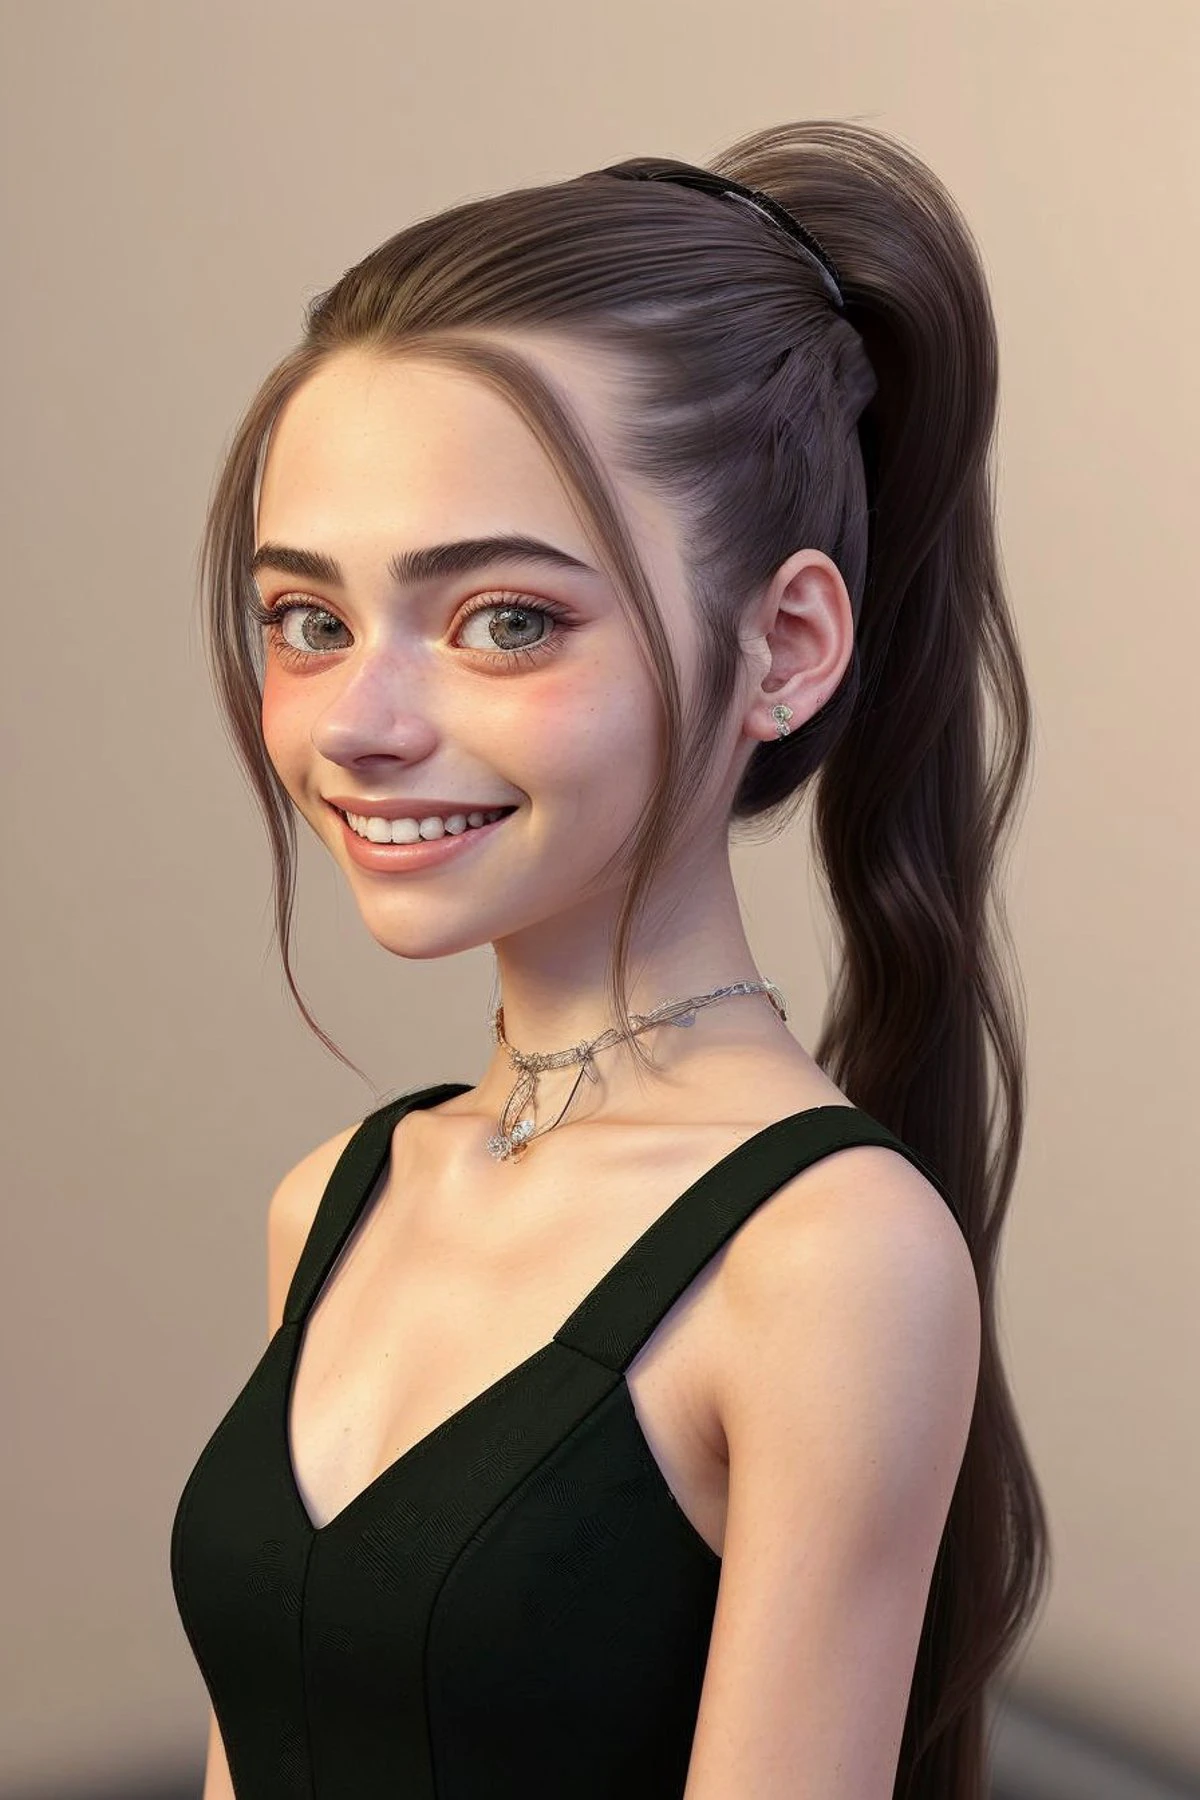 (Estilo de arte VR, 3D, imersivo, Digital, detalhado:1.2) retrato OliviaChristie, concentre-se no rosto sorridente, vestindo um vestido de baile , o cabelo dela é penteado como um rabo de cavalo trançado,